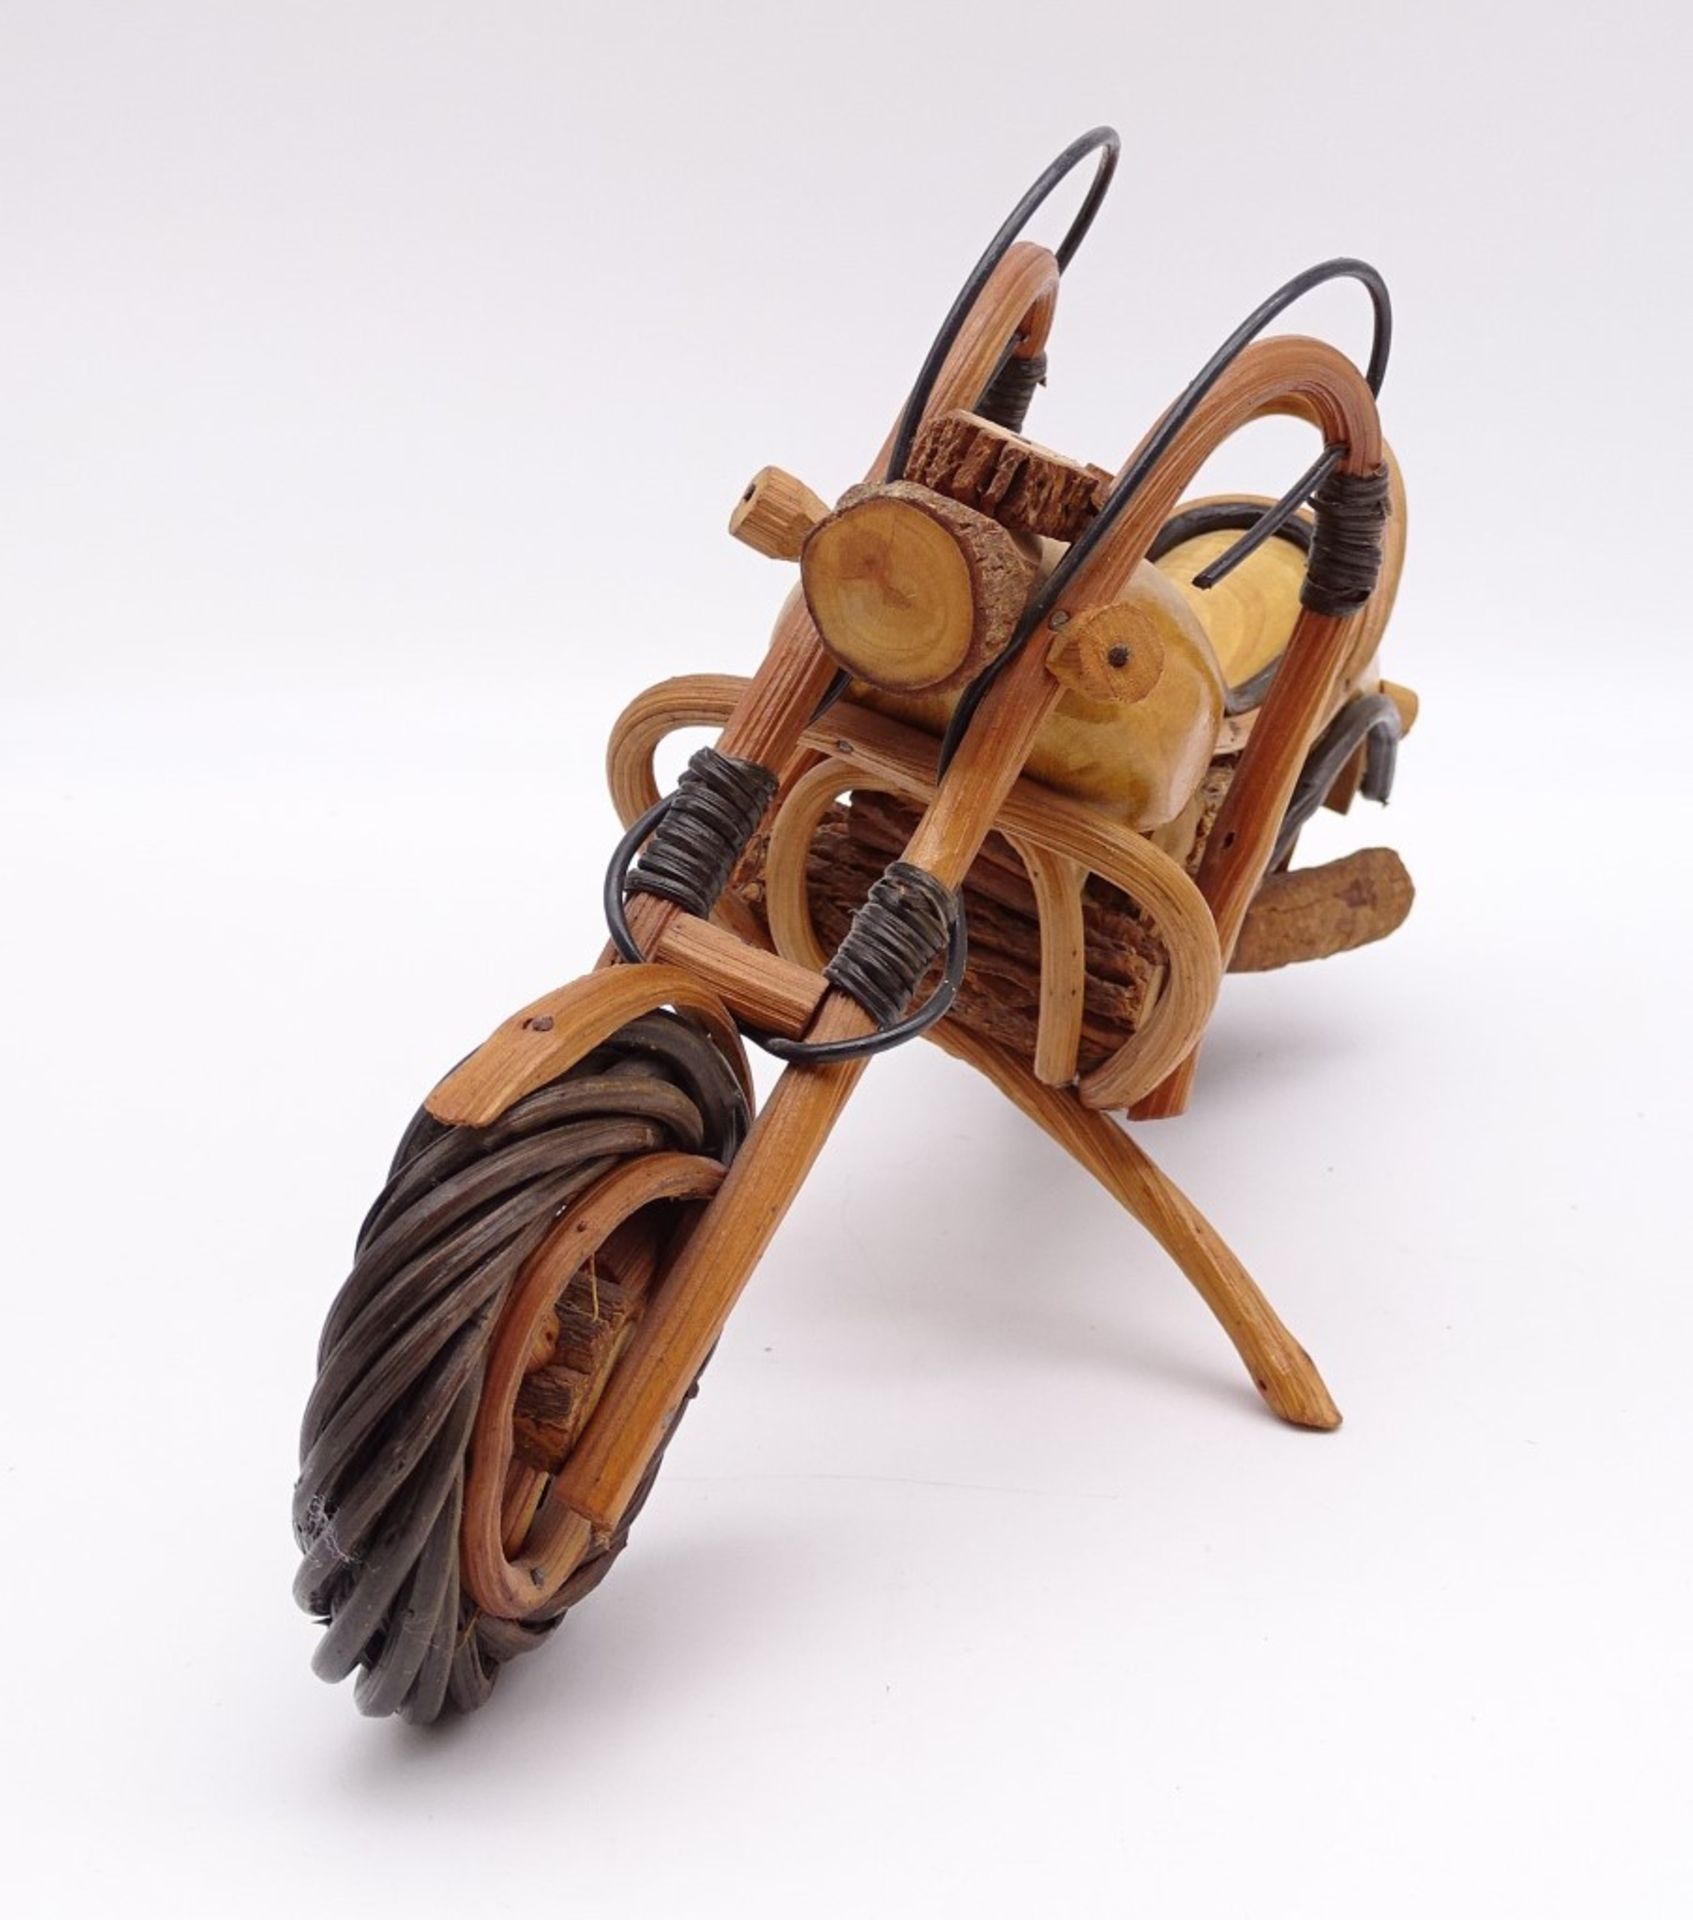 Motorradmodel aus Holz, ca. 34 x 17 cm, leicht reinigungsbedürftig - Bild 4 aus 6